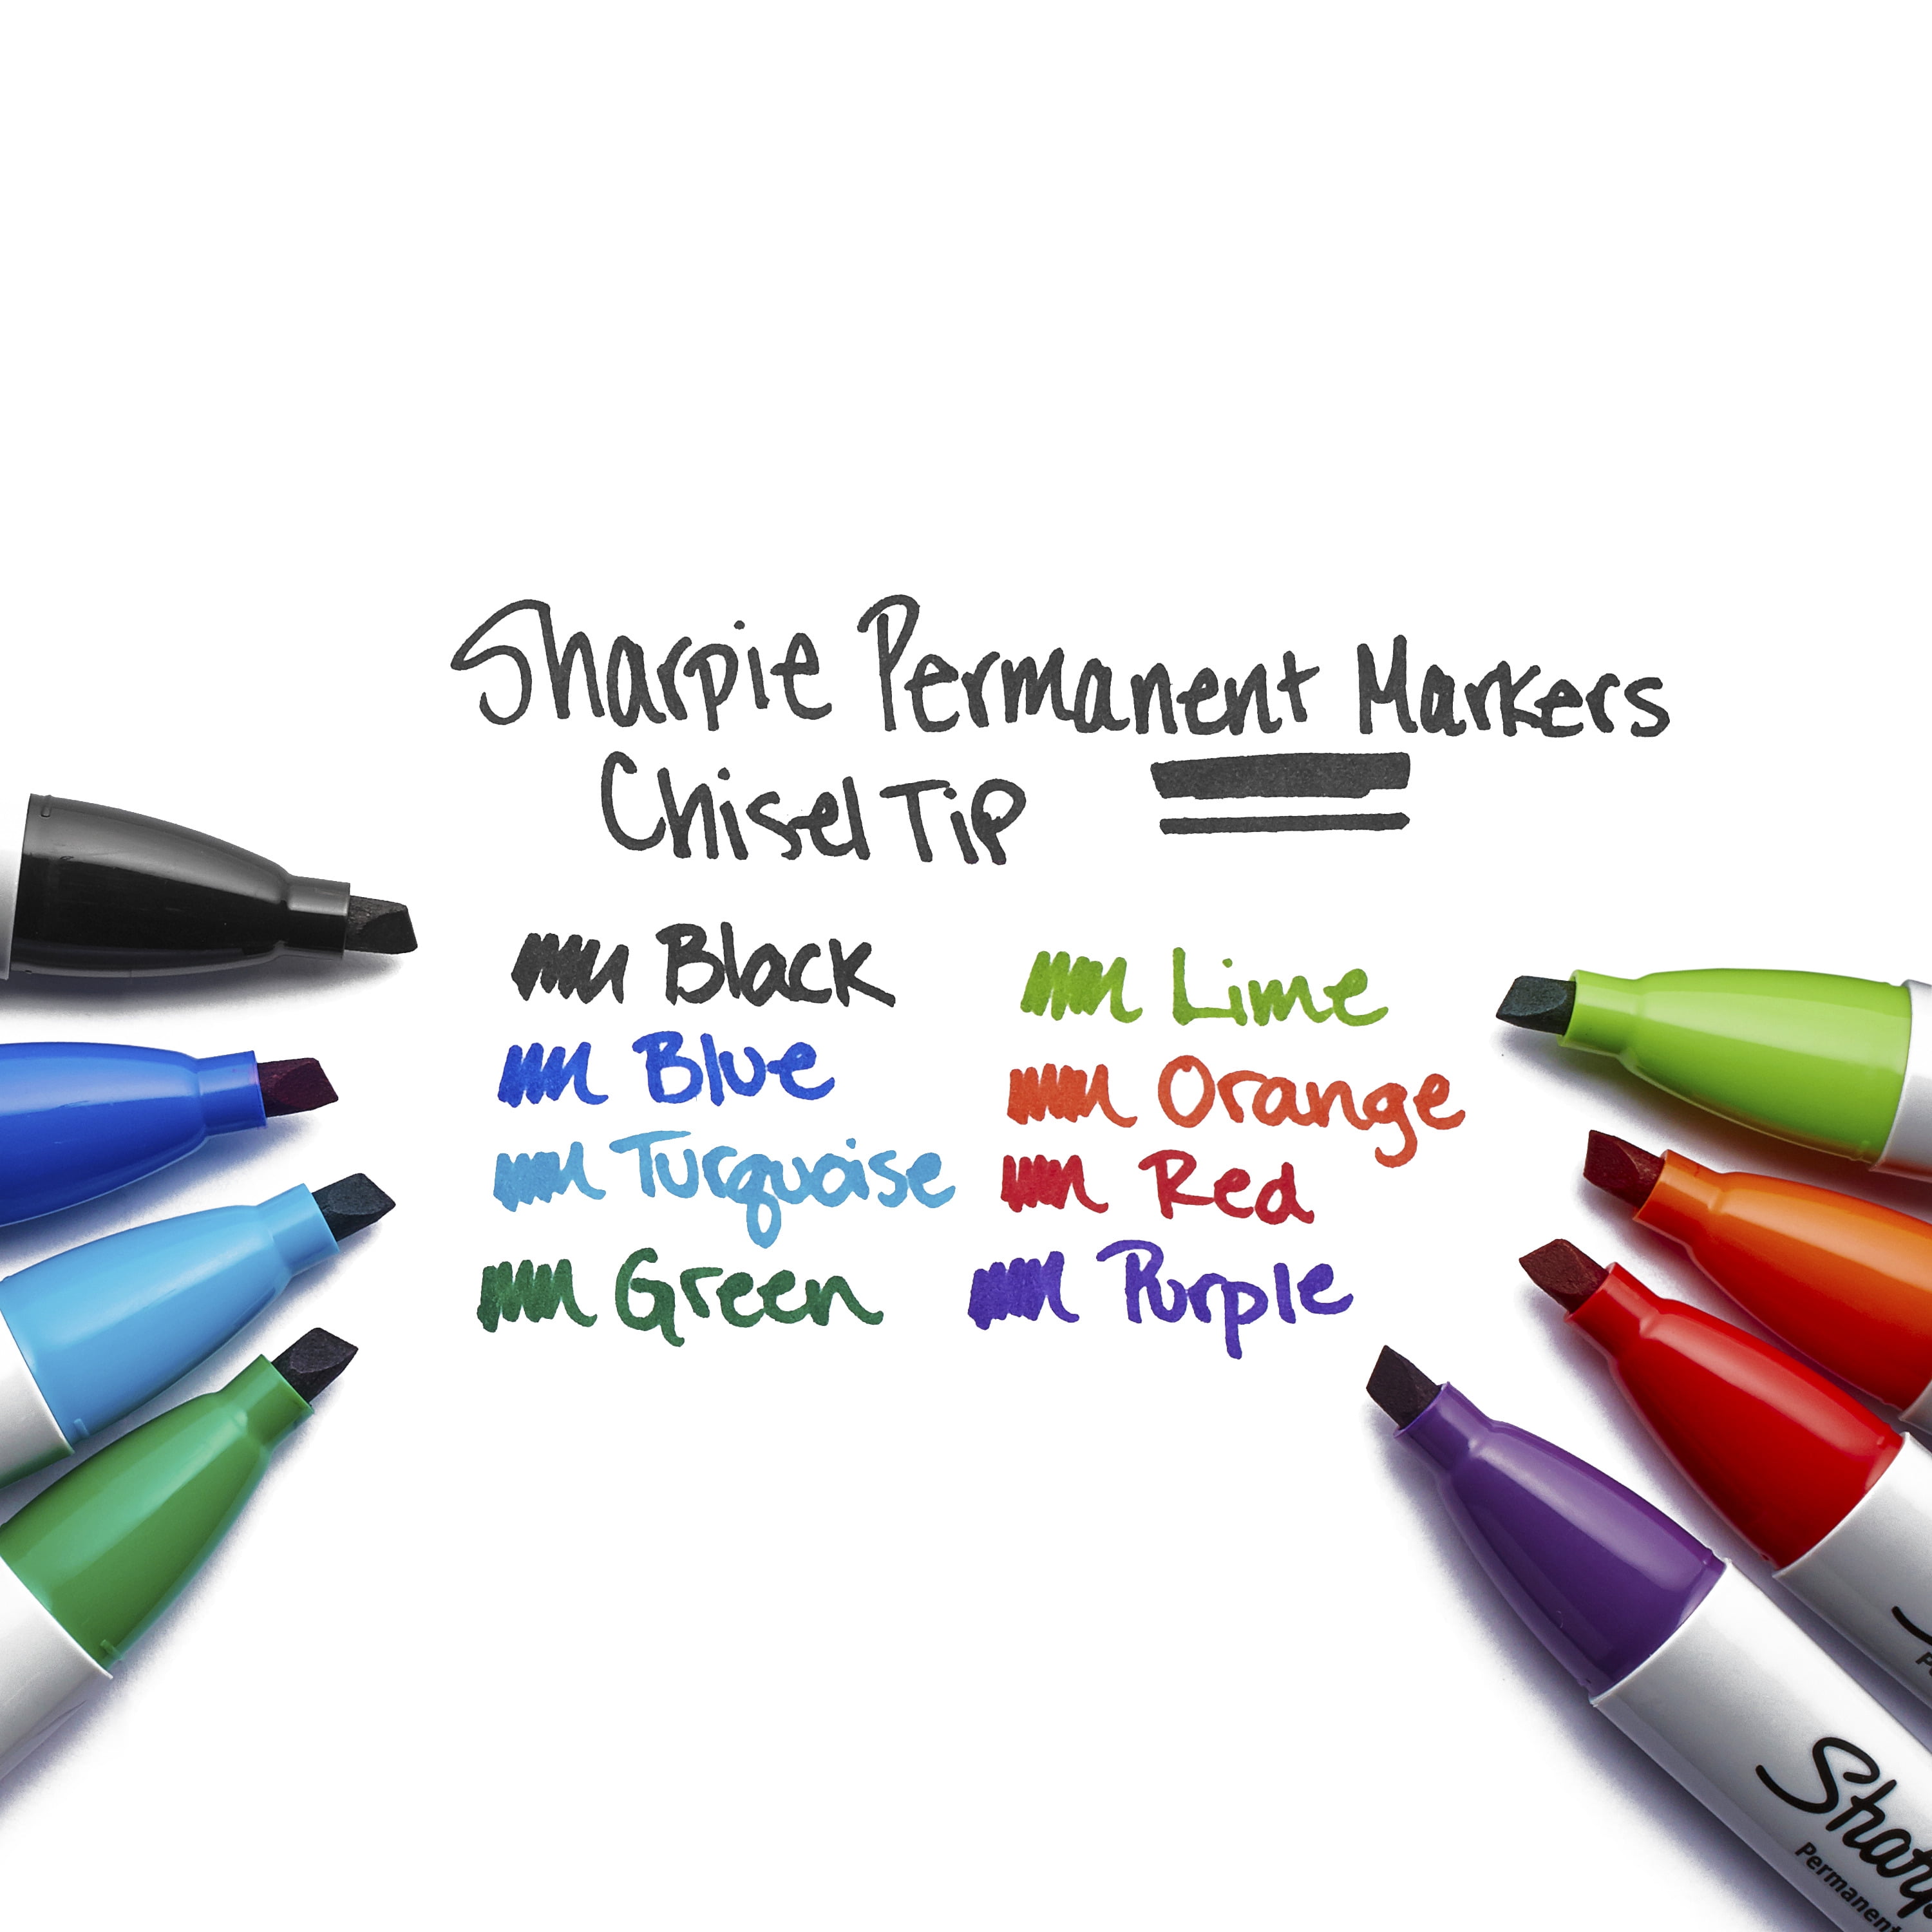 Sharpie Broad Chisel Tip Permanent Marker 4 Pack - Multi-Color, 4 pk - Pick  'n Save